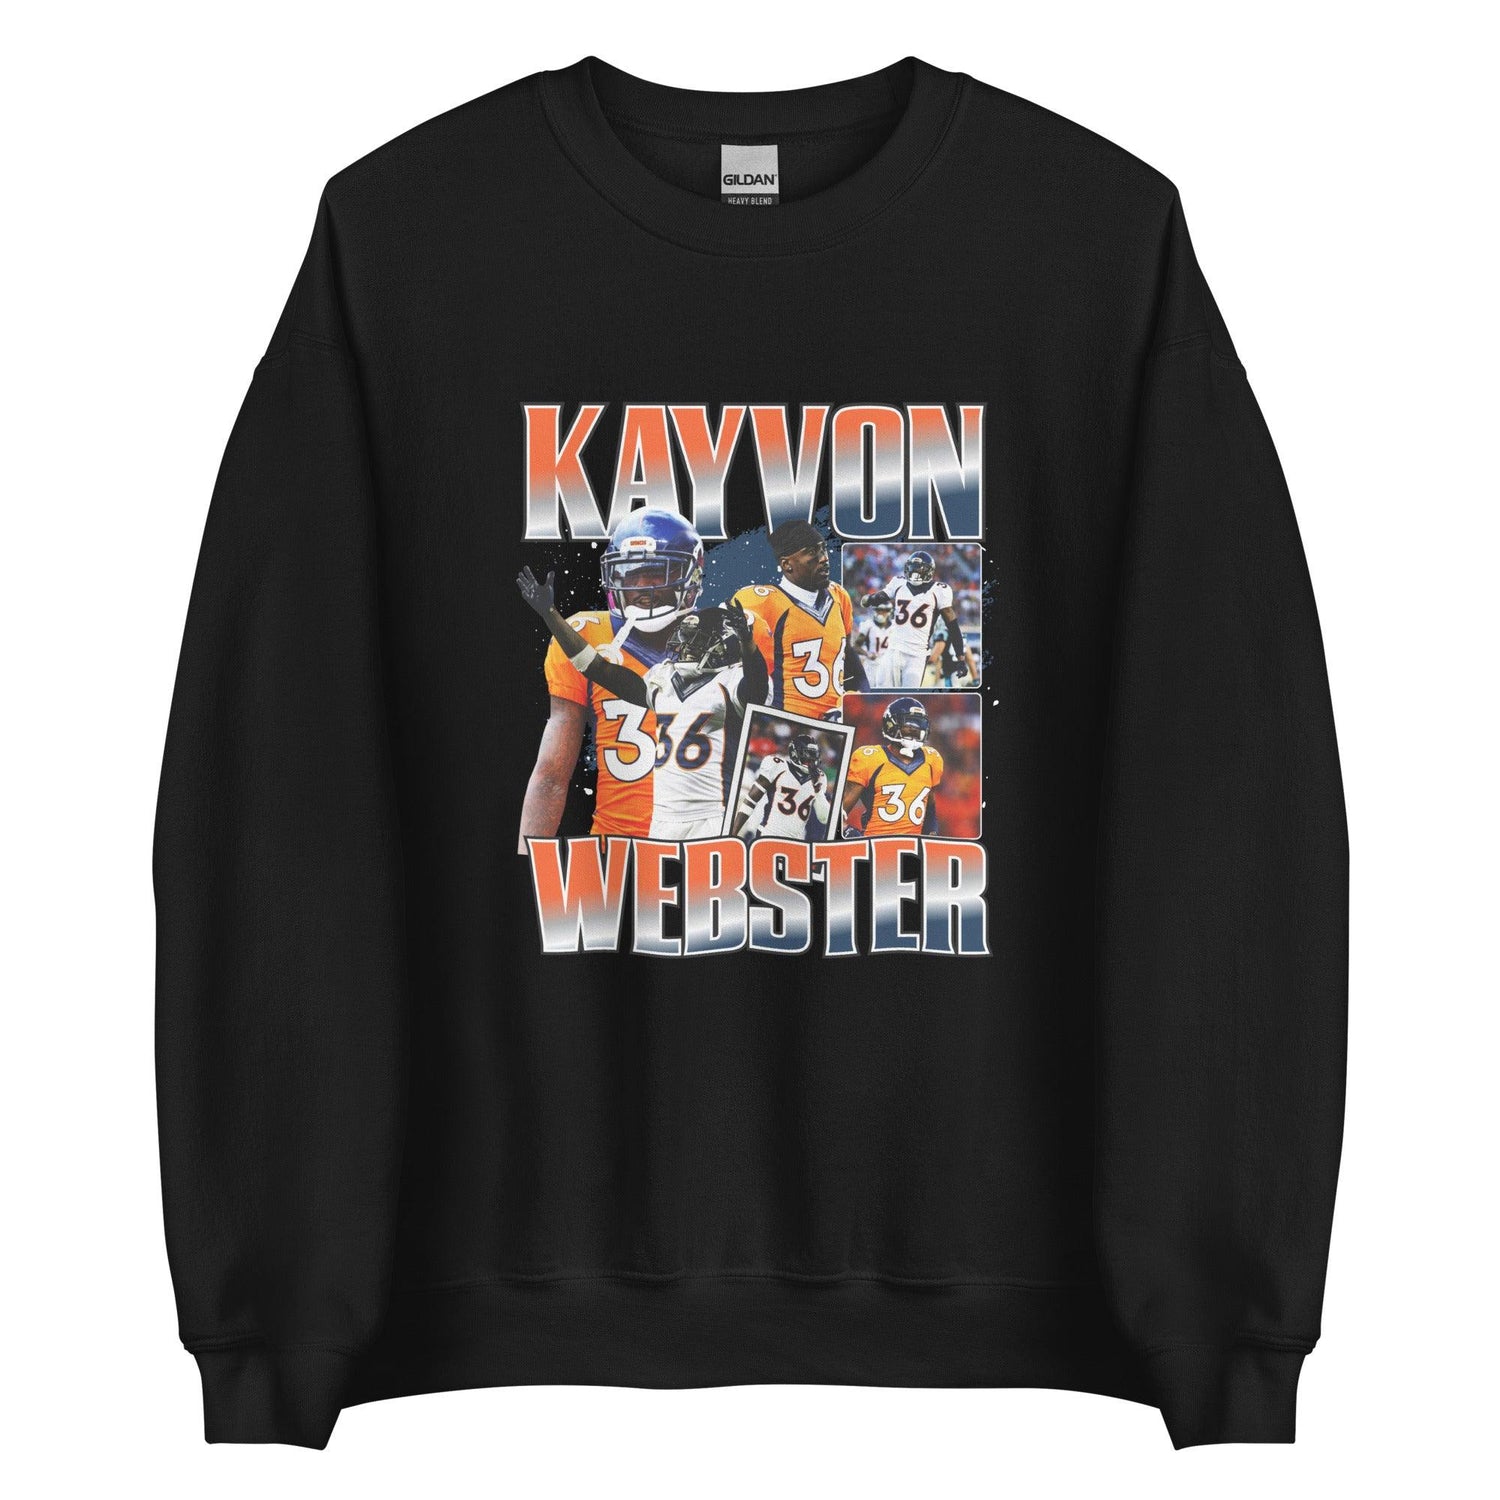 Kayvon Webster "Vintage" Sweatshirt - Fan Arch